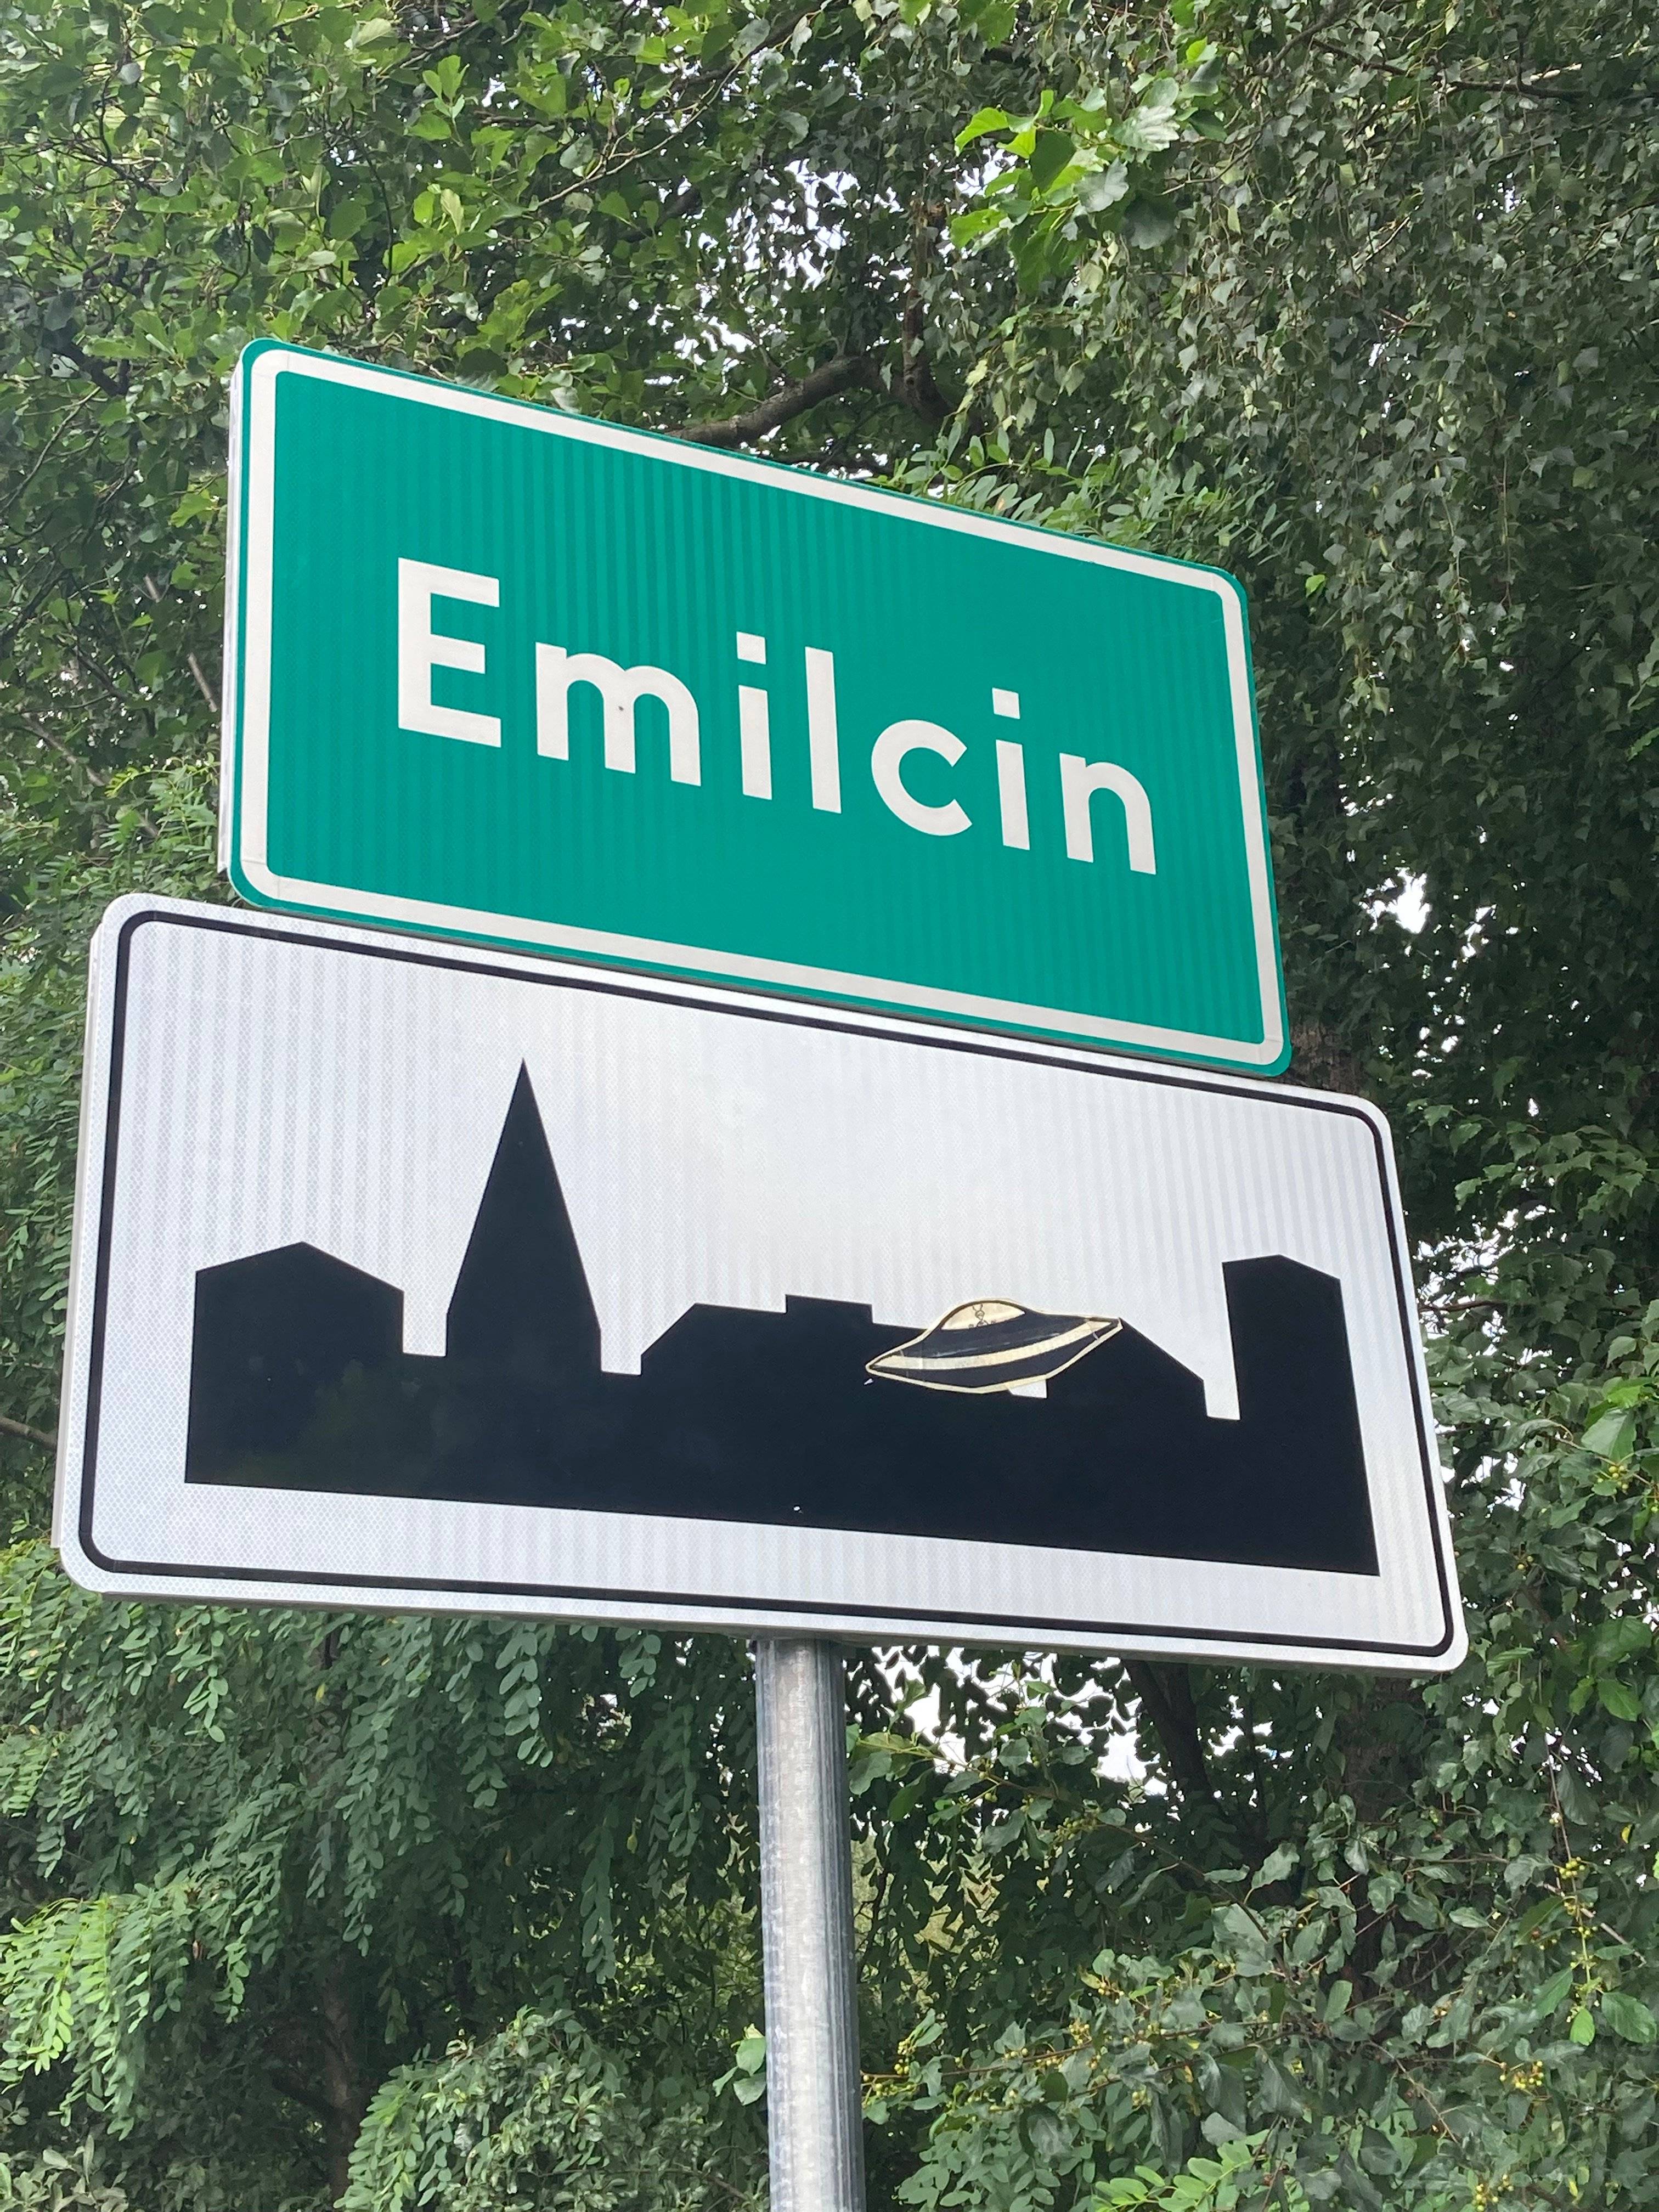 zdjęcie: zielona tablica z nazwą Emilcin, pod nią typowa biało czarna tablica oznaczająca teren zabudowany, ale nad sylwetą miasta doklejony rysunek UFO